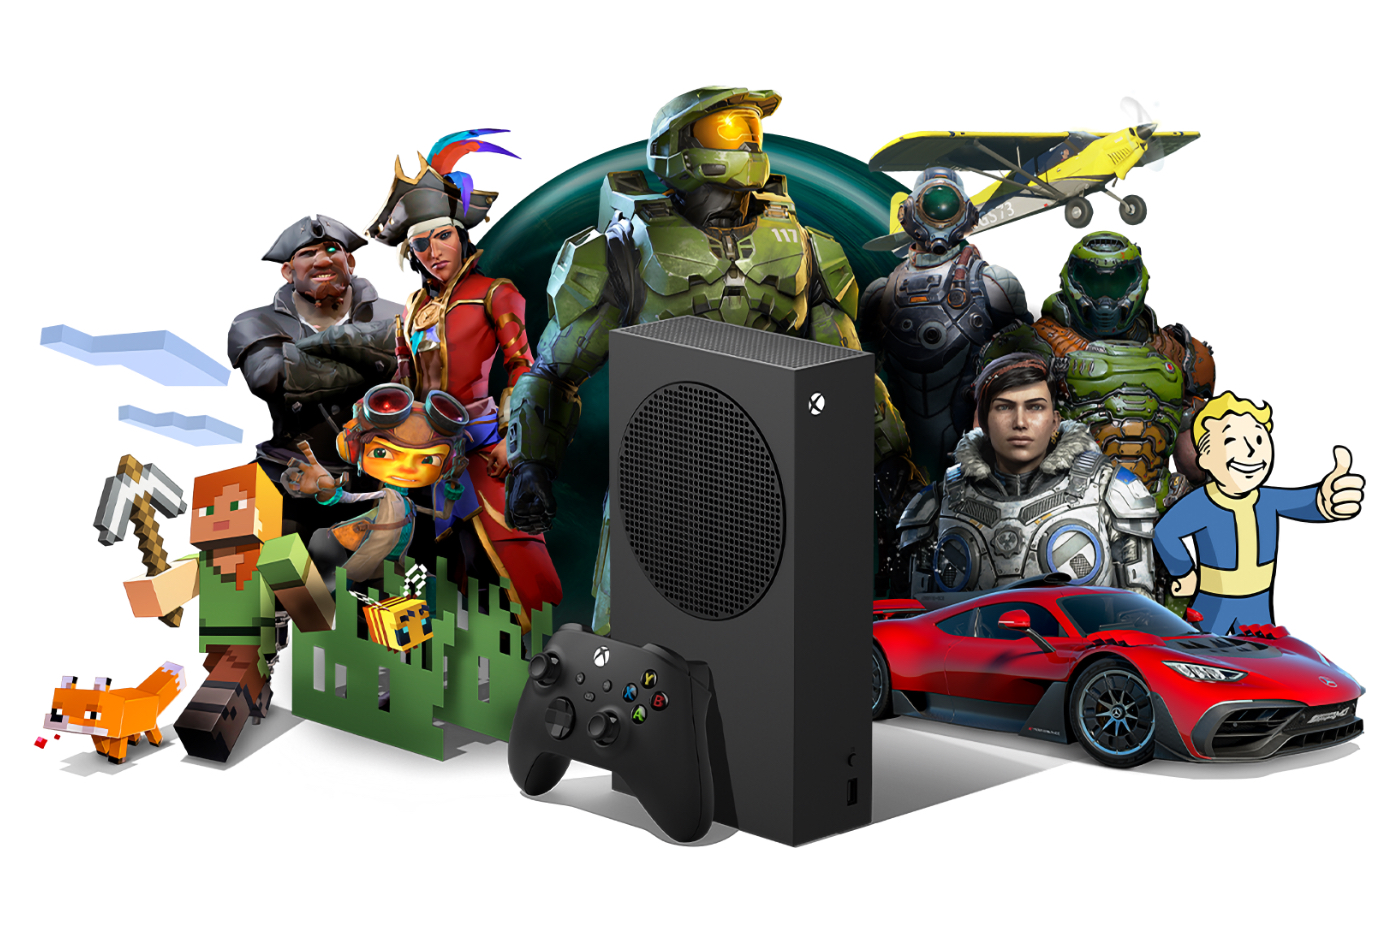 La Xbox Series S avec 1 To de stockage est enfin disponible